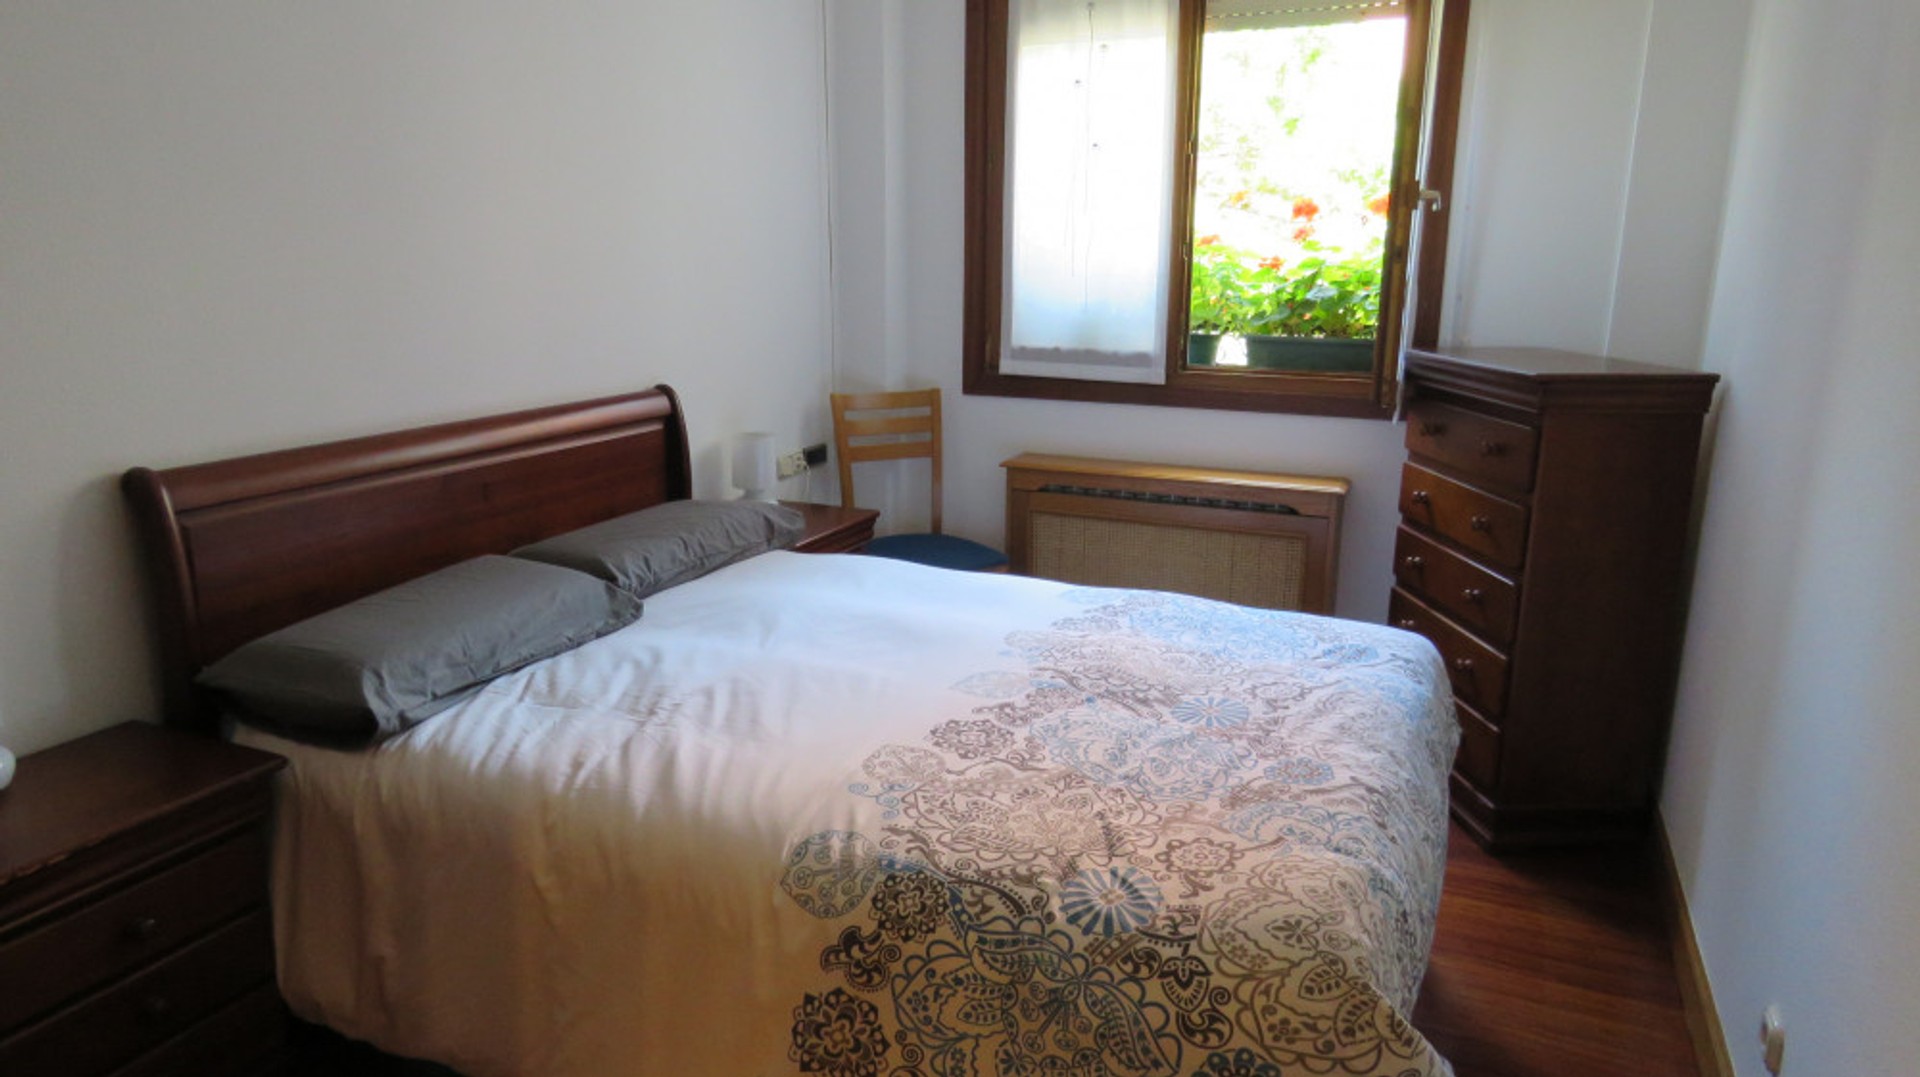 Donostia/san Sebastián içinde 3 yatak odalı konaklama